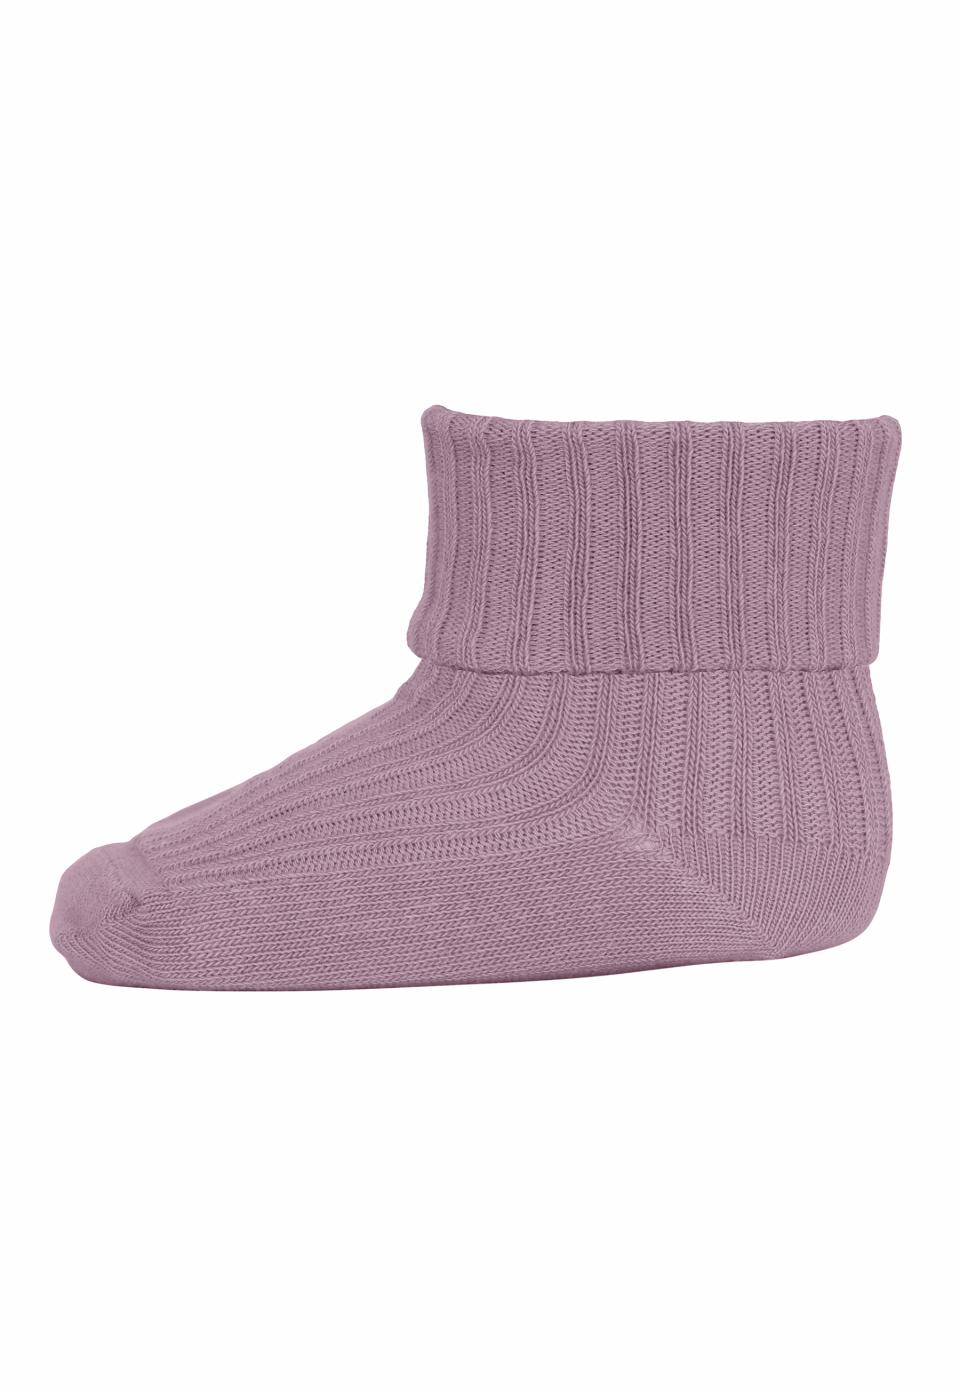 Cotton rib baby socks - Lilac Shadow